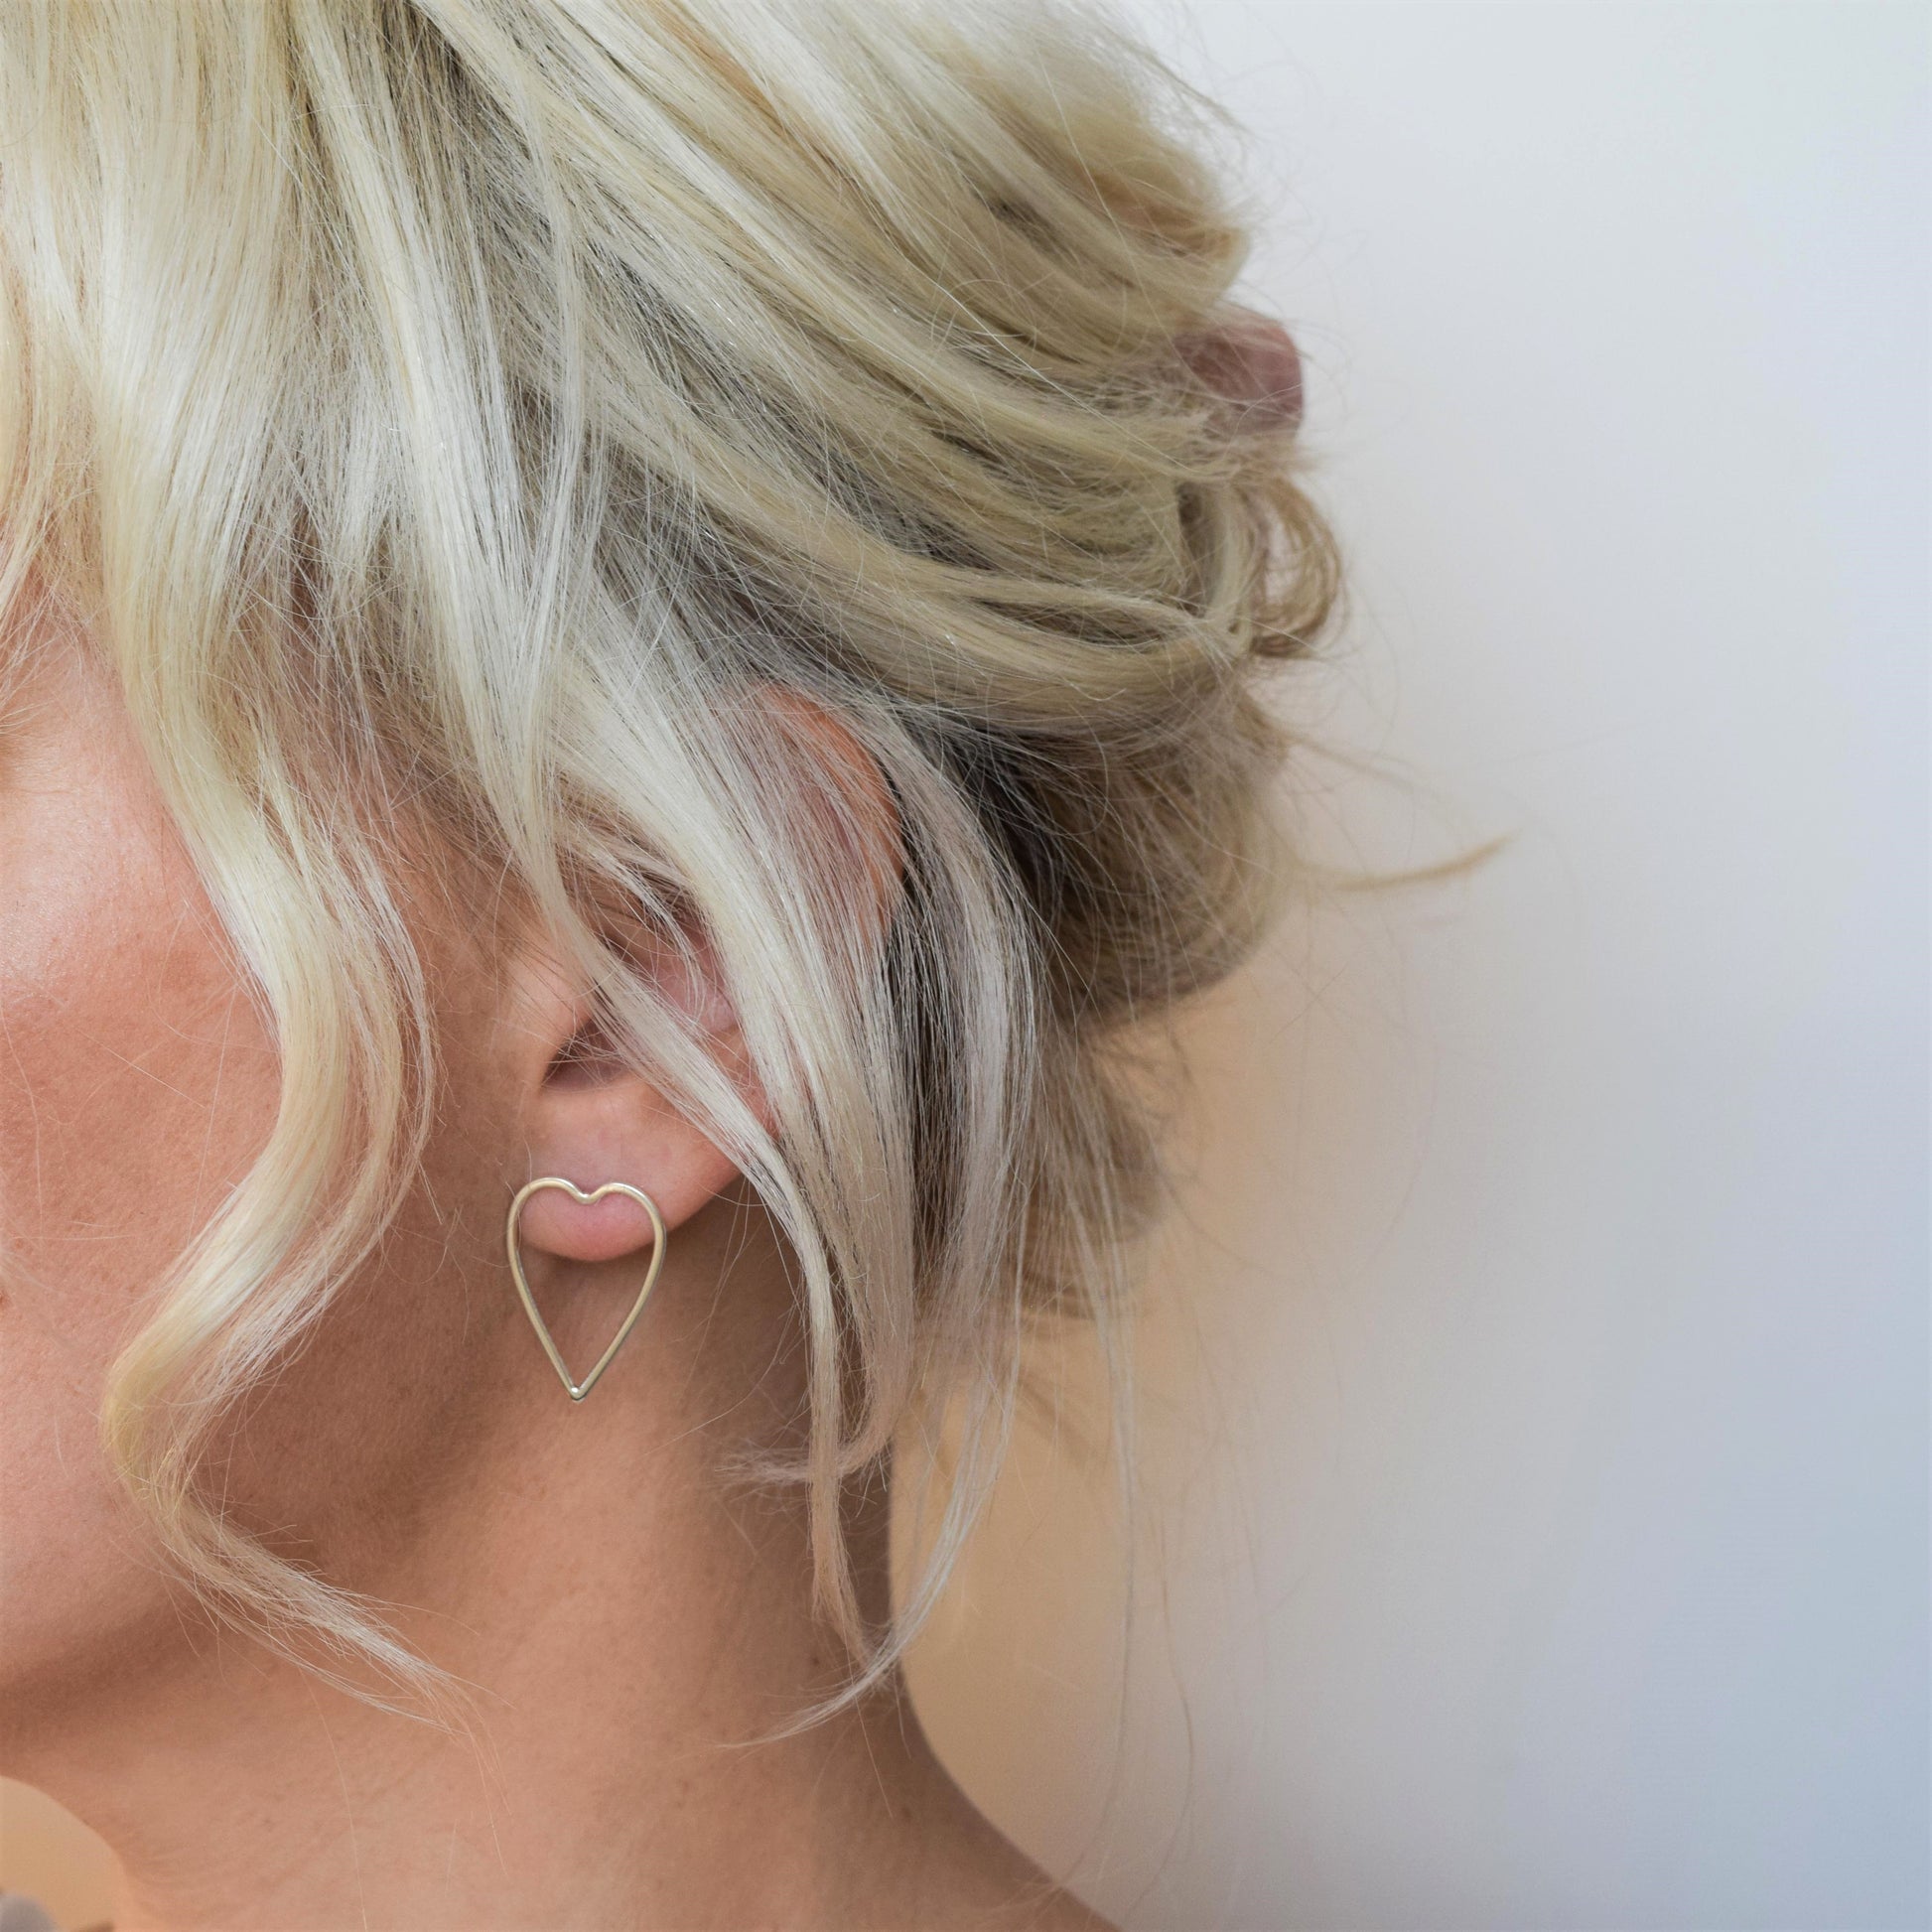 Open heart earrings worn by blond haired model